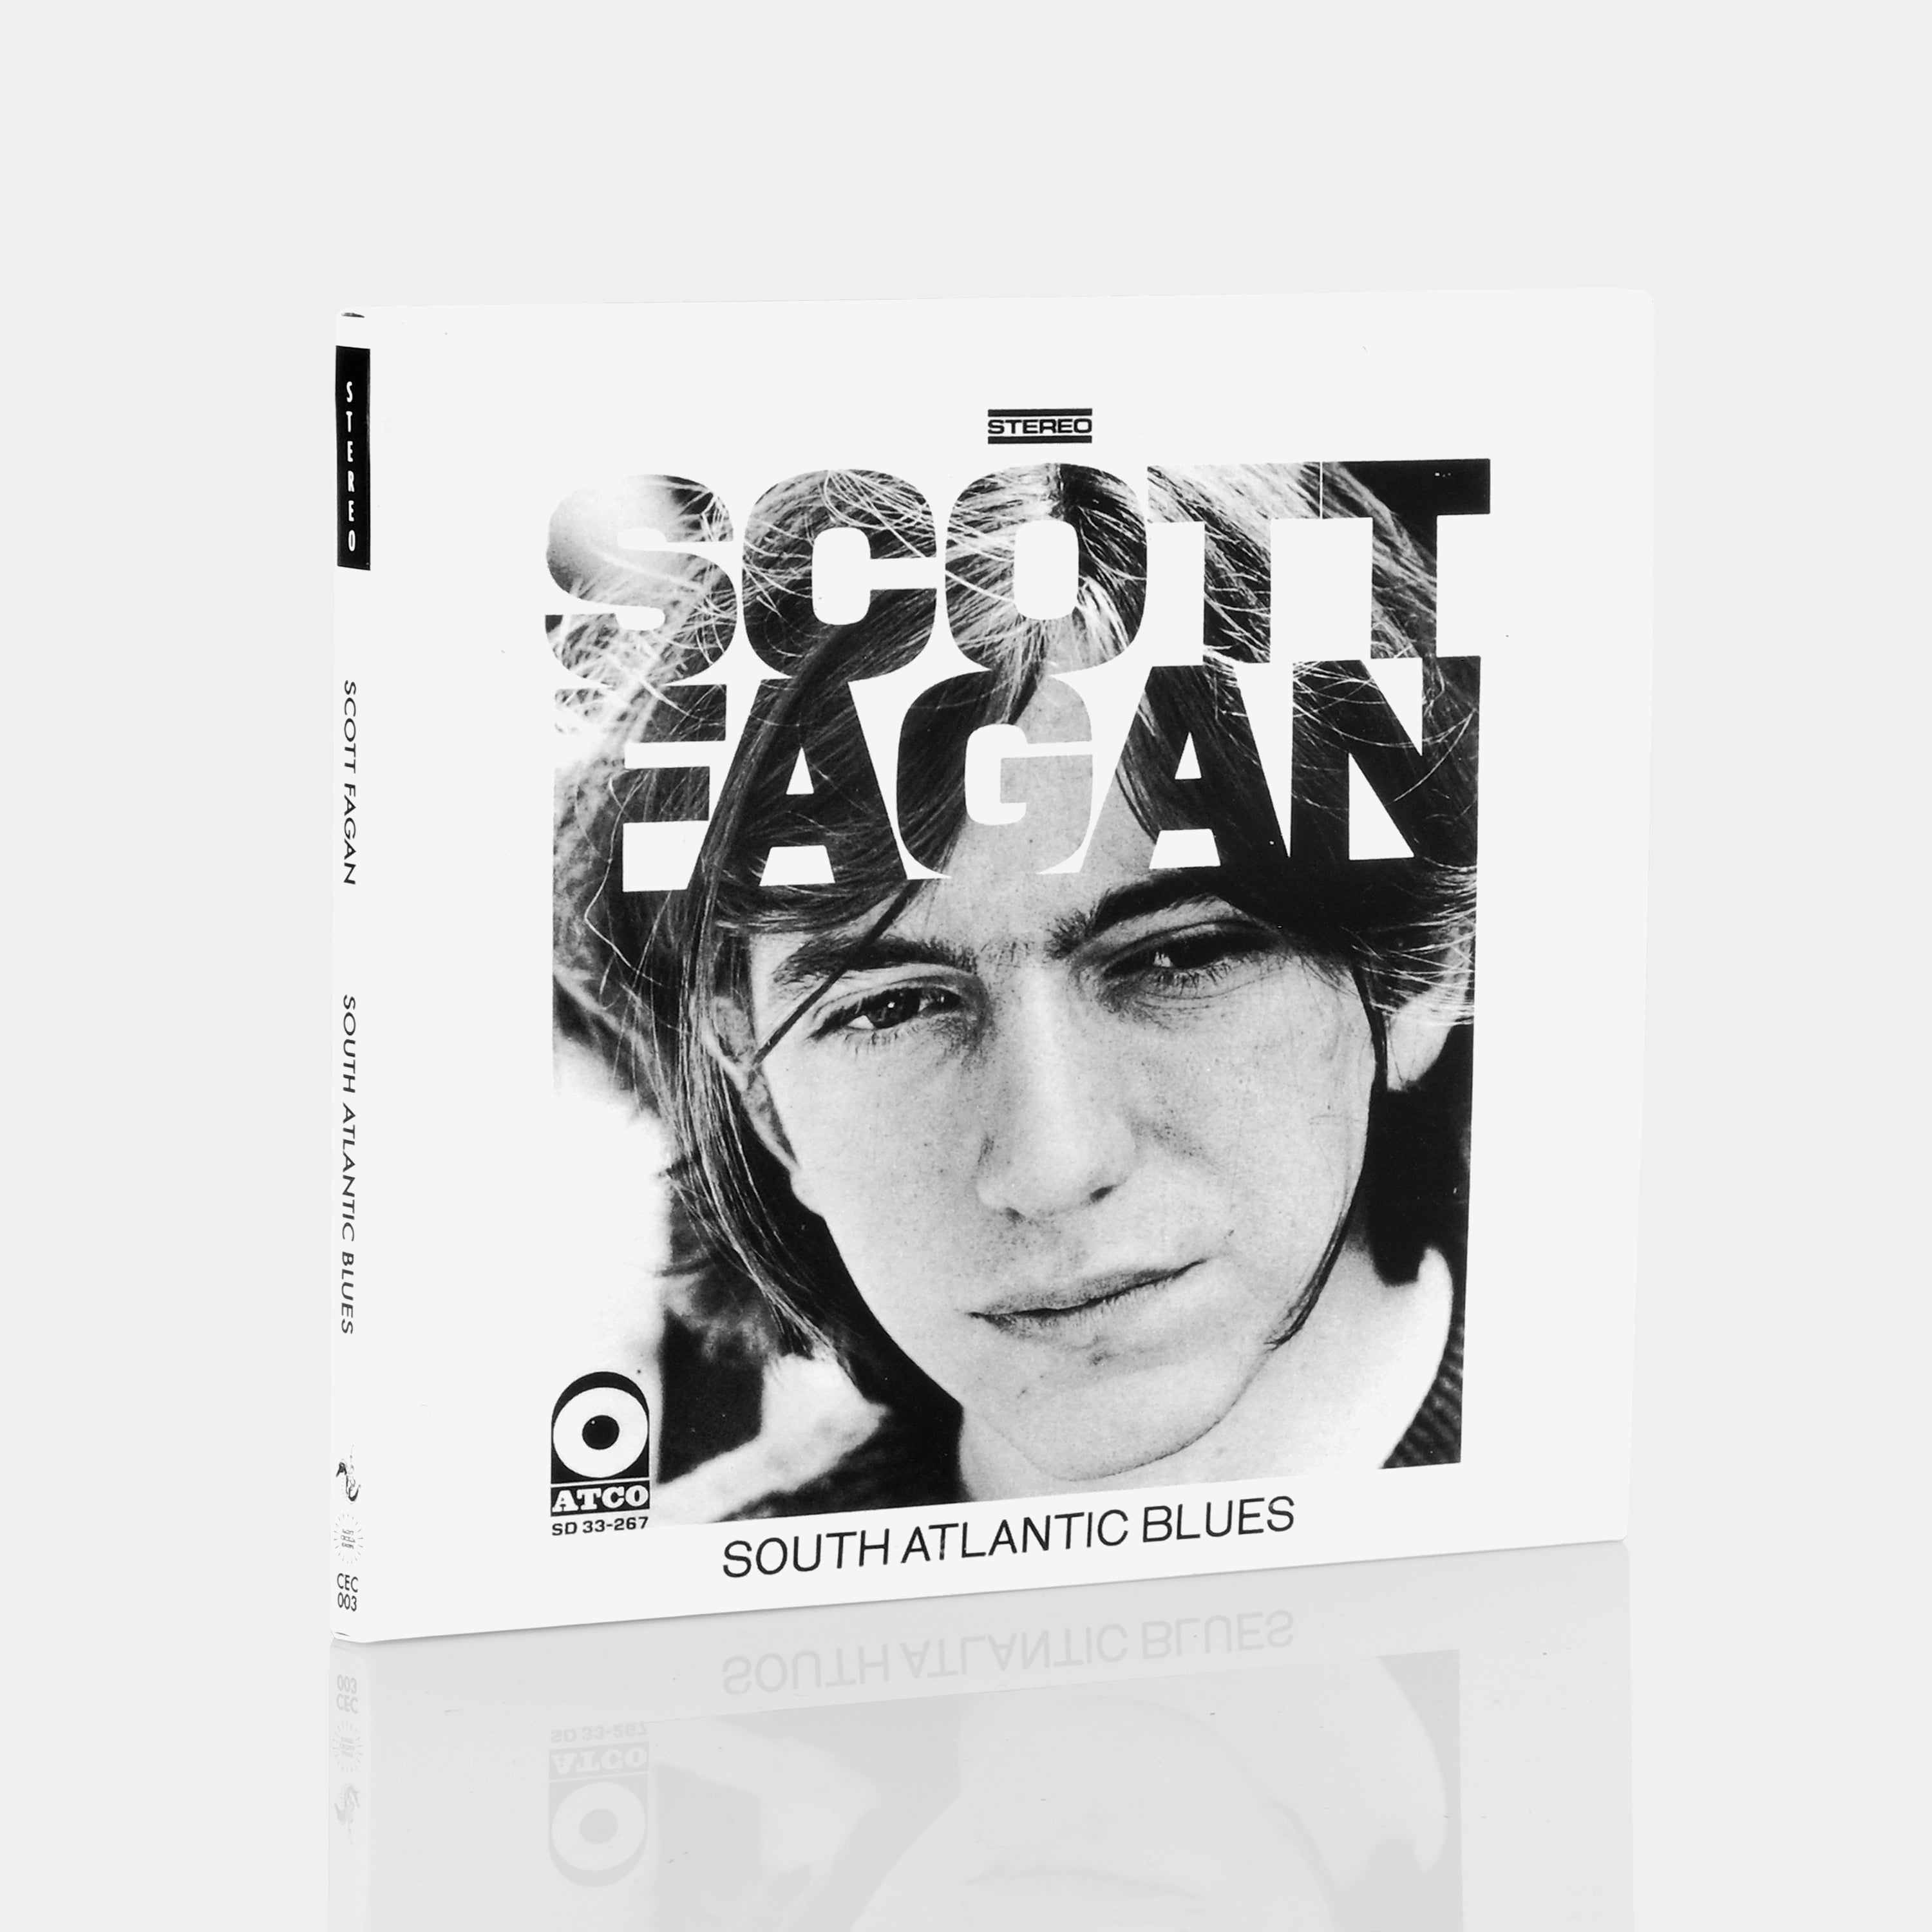 Scott Fagan - South Atlantic Blues CD